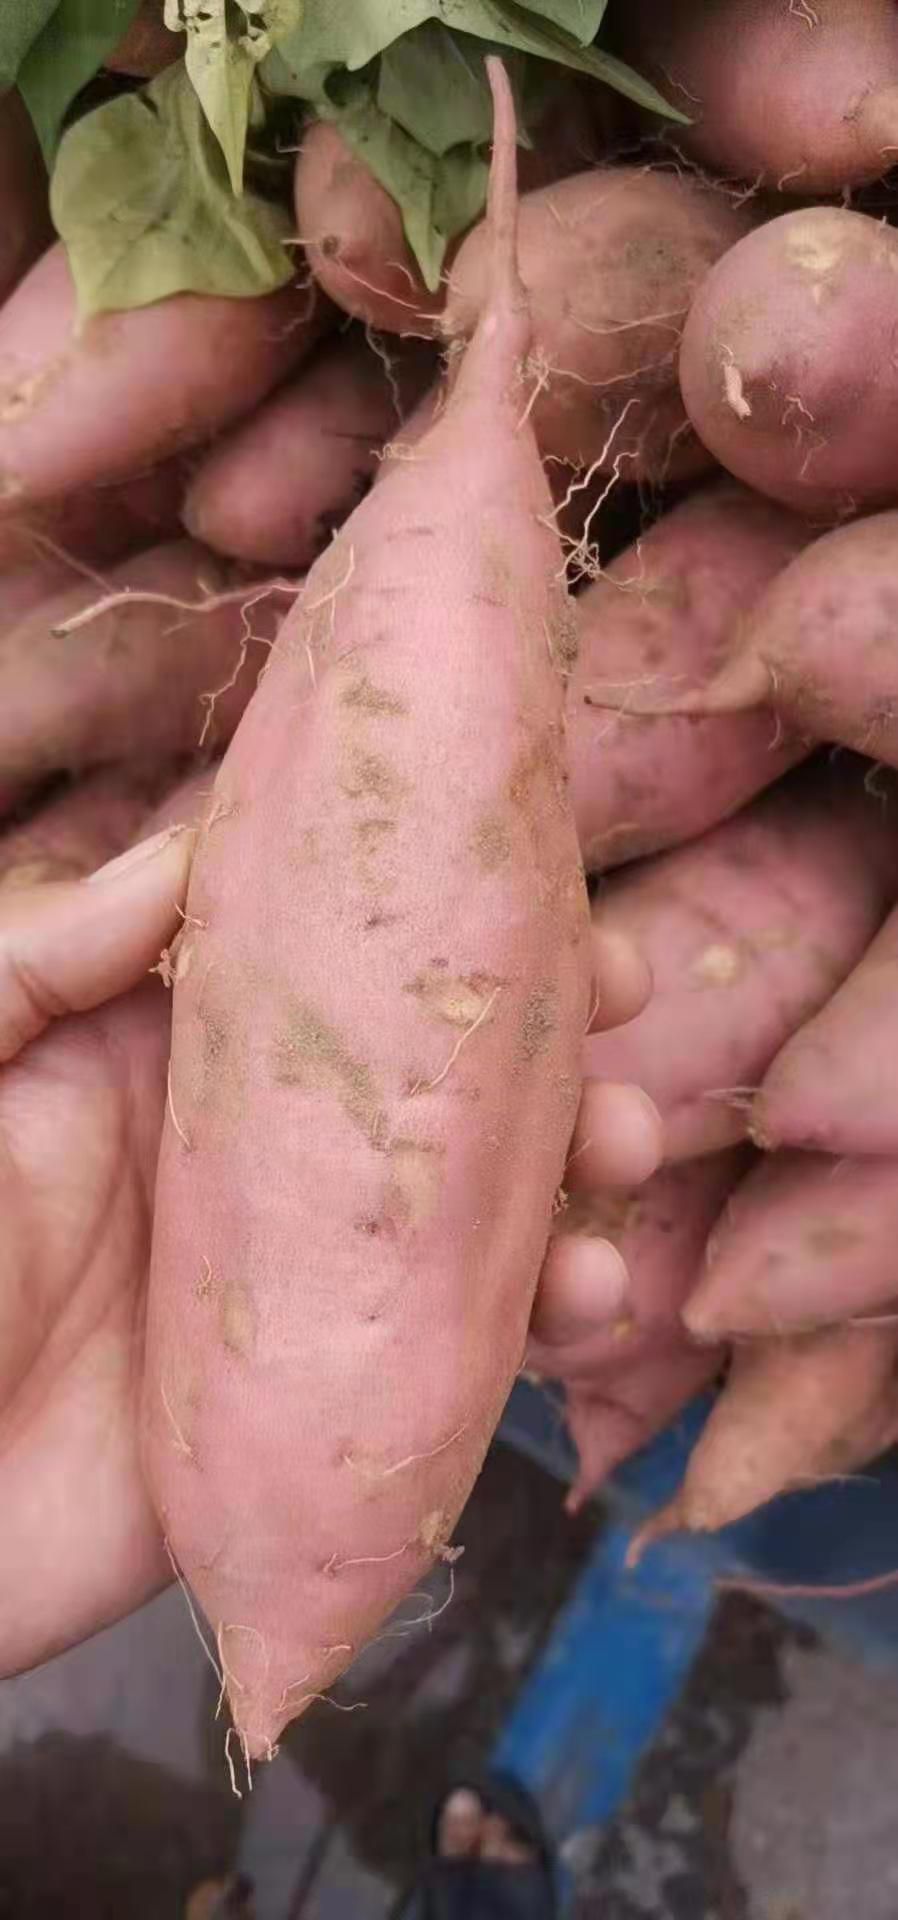 早熟红薯品种图片